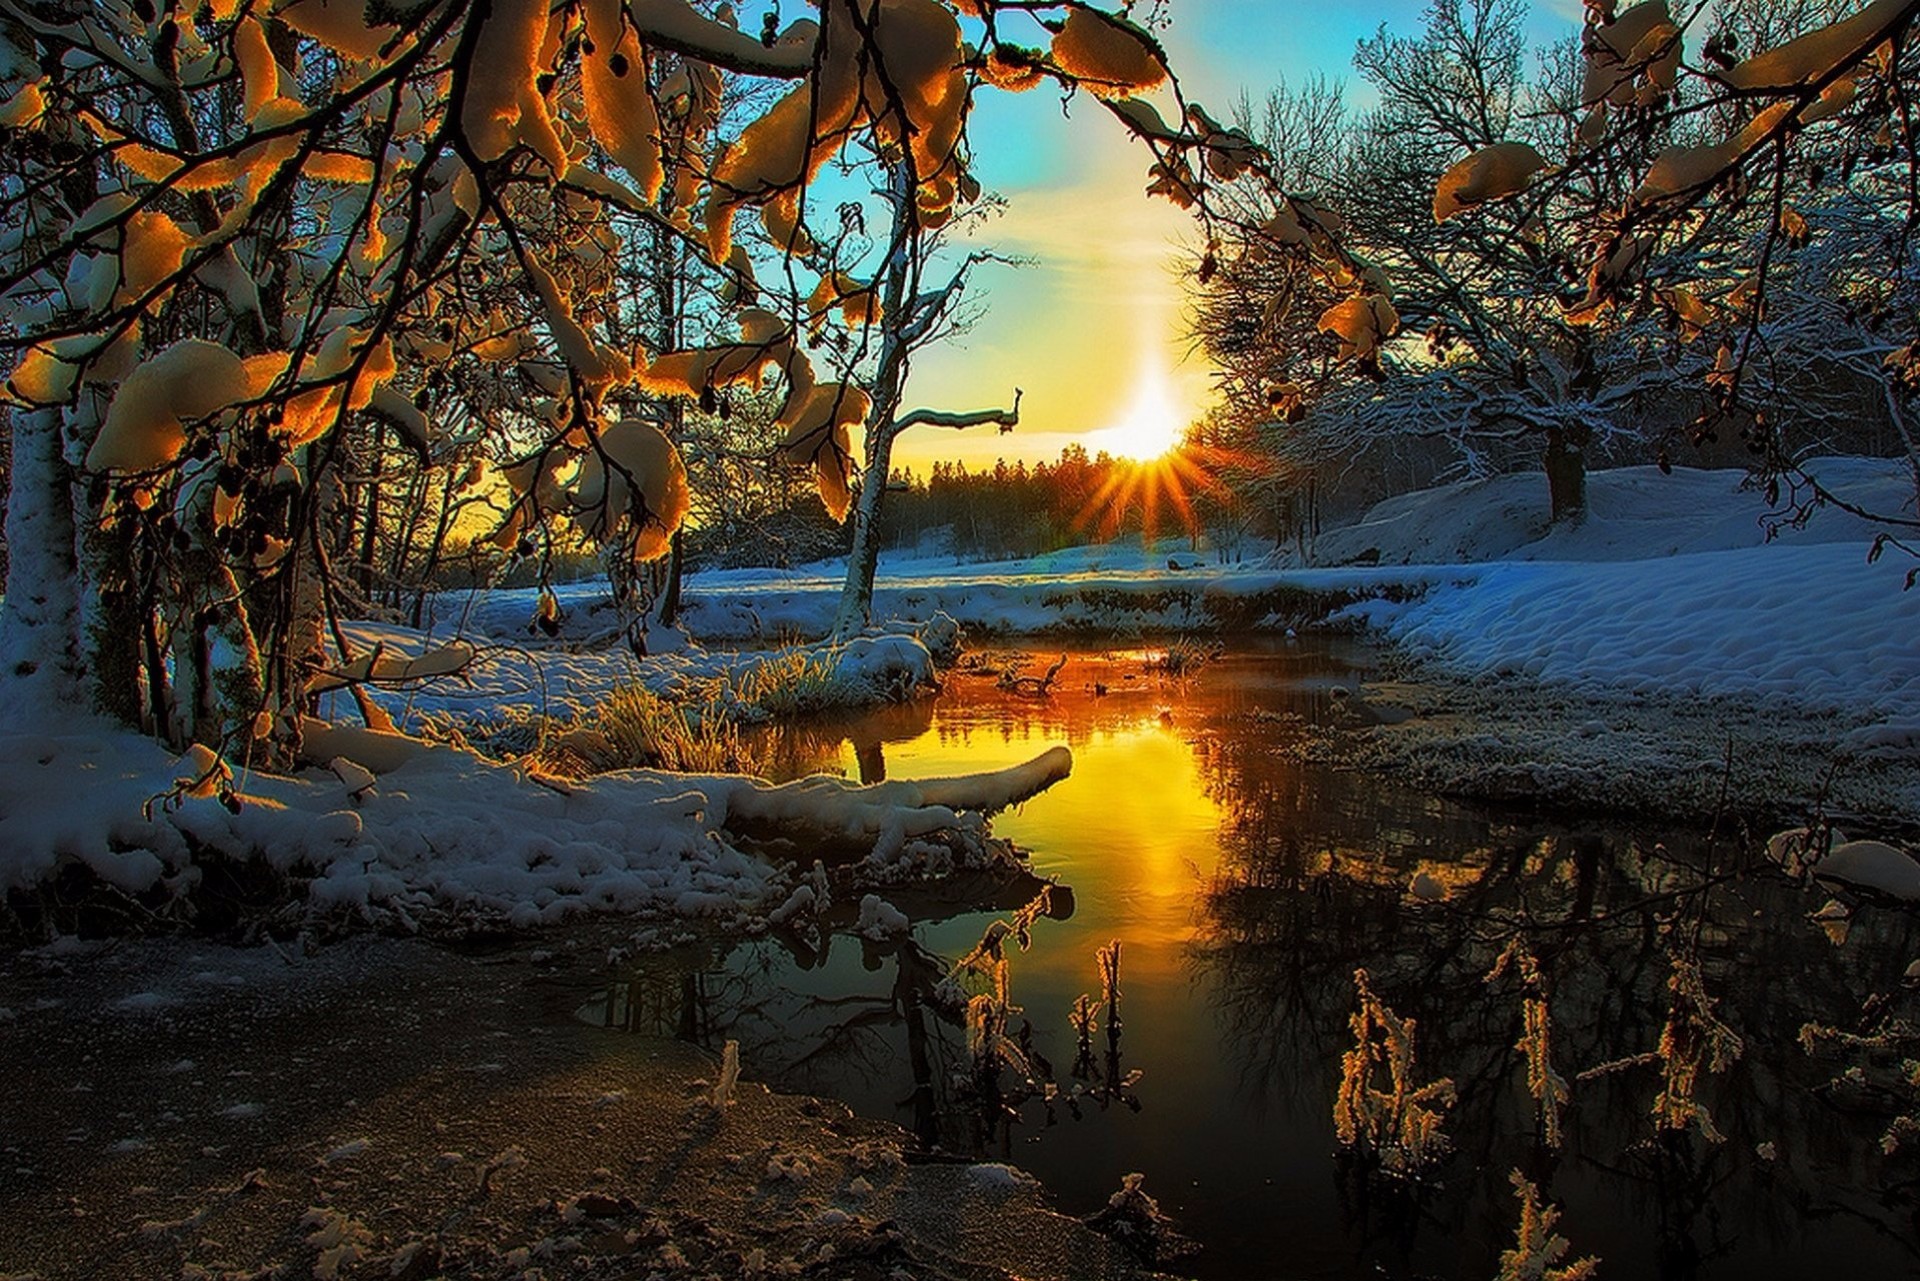 Скачать обои бесплатно Зима, Река, Снег, Дерево, Земля/природа, Закат Солнца картинка на рабочий стол ПК